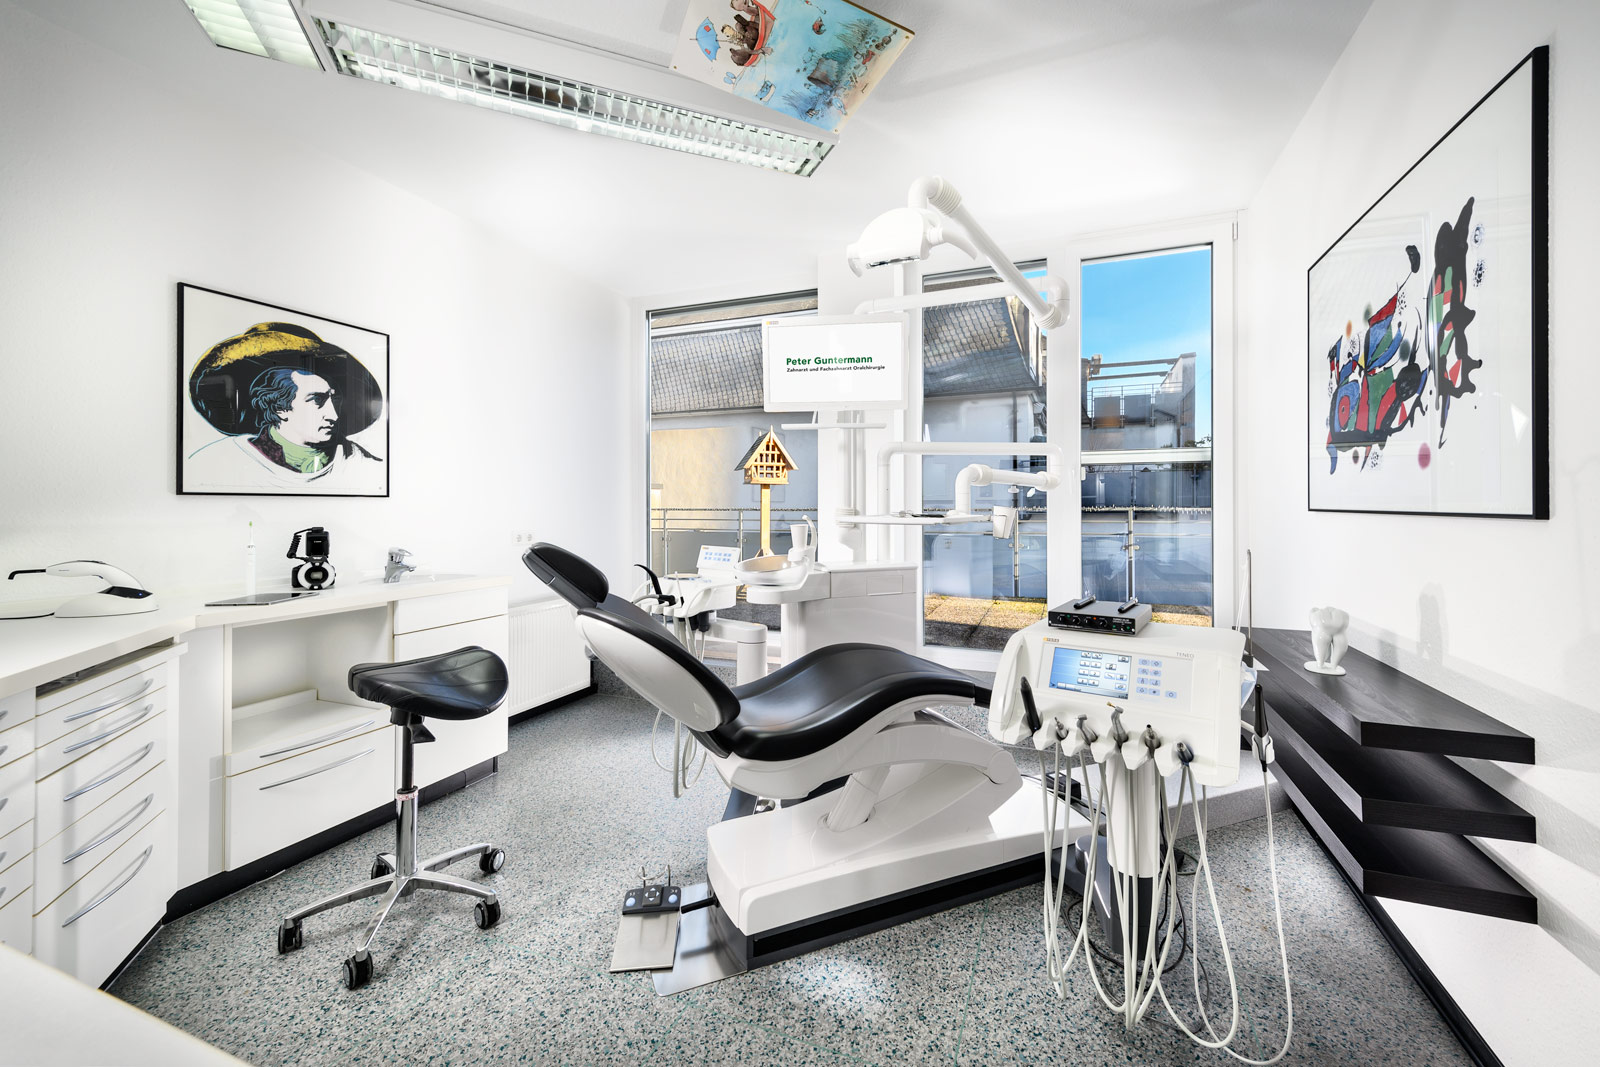 Behandlungszimmer - Zahnarzt und Fachzahnarzt Praxis Guntermann, Olpe. Foto Dietrich Hackenberg